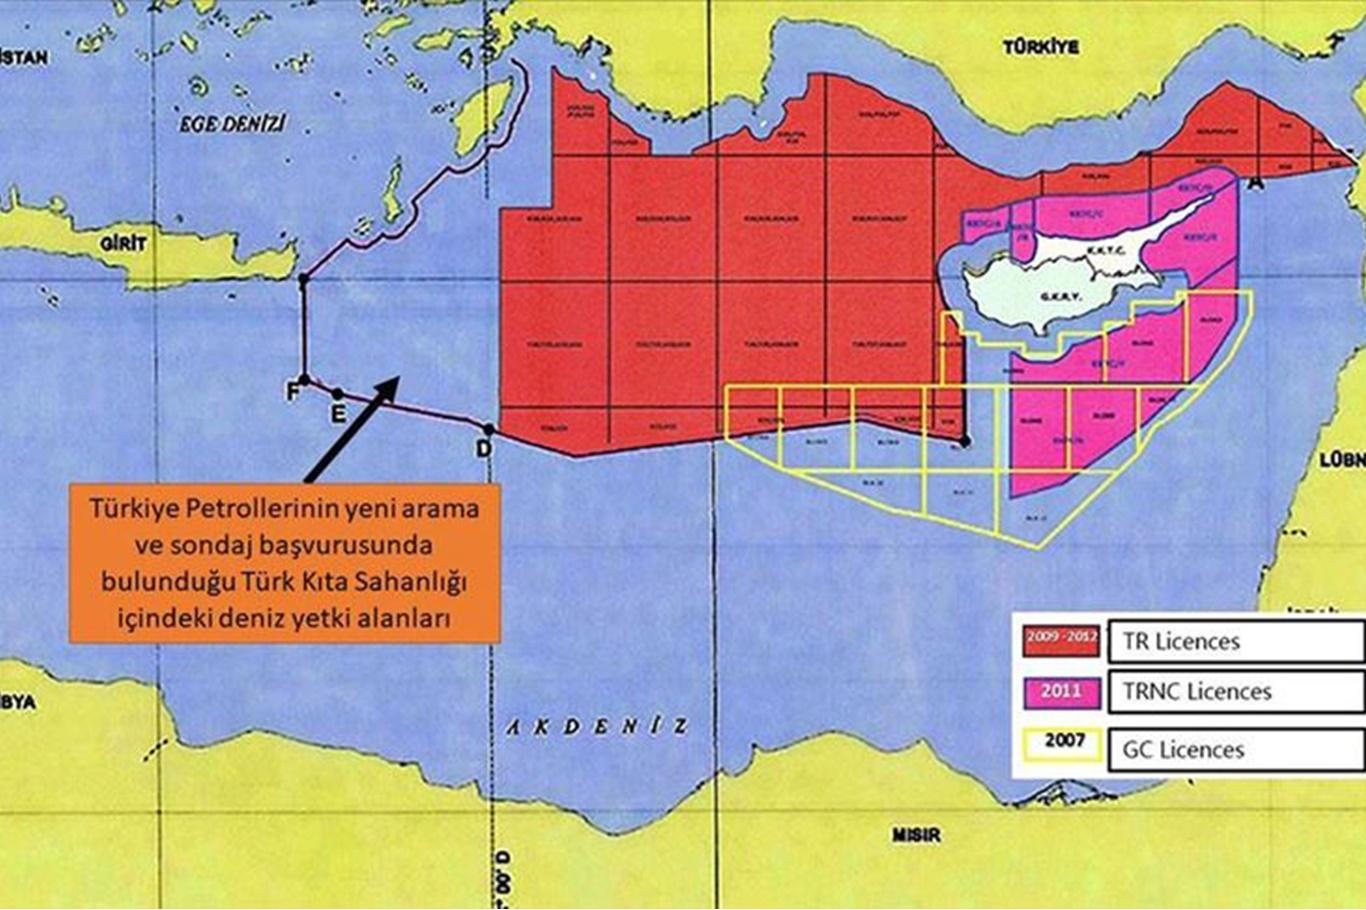 Dışişleri Bakanlığı, Doğu Akdeniz'de yeni ruhsat başvuru sahaları haritasını paylaştı